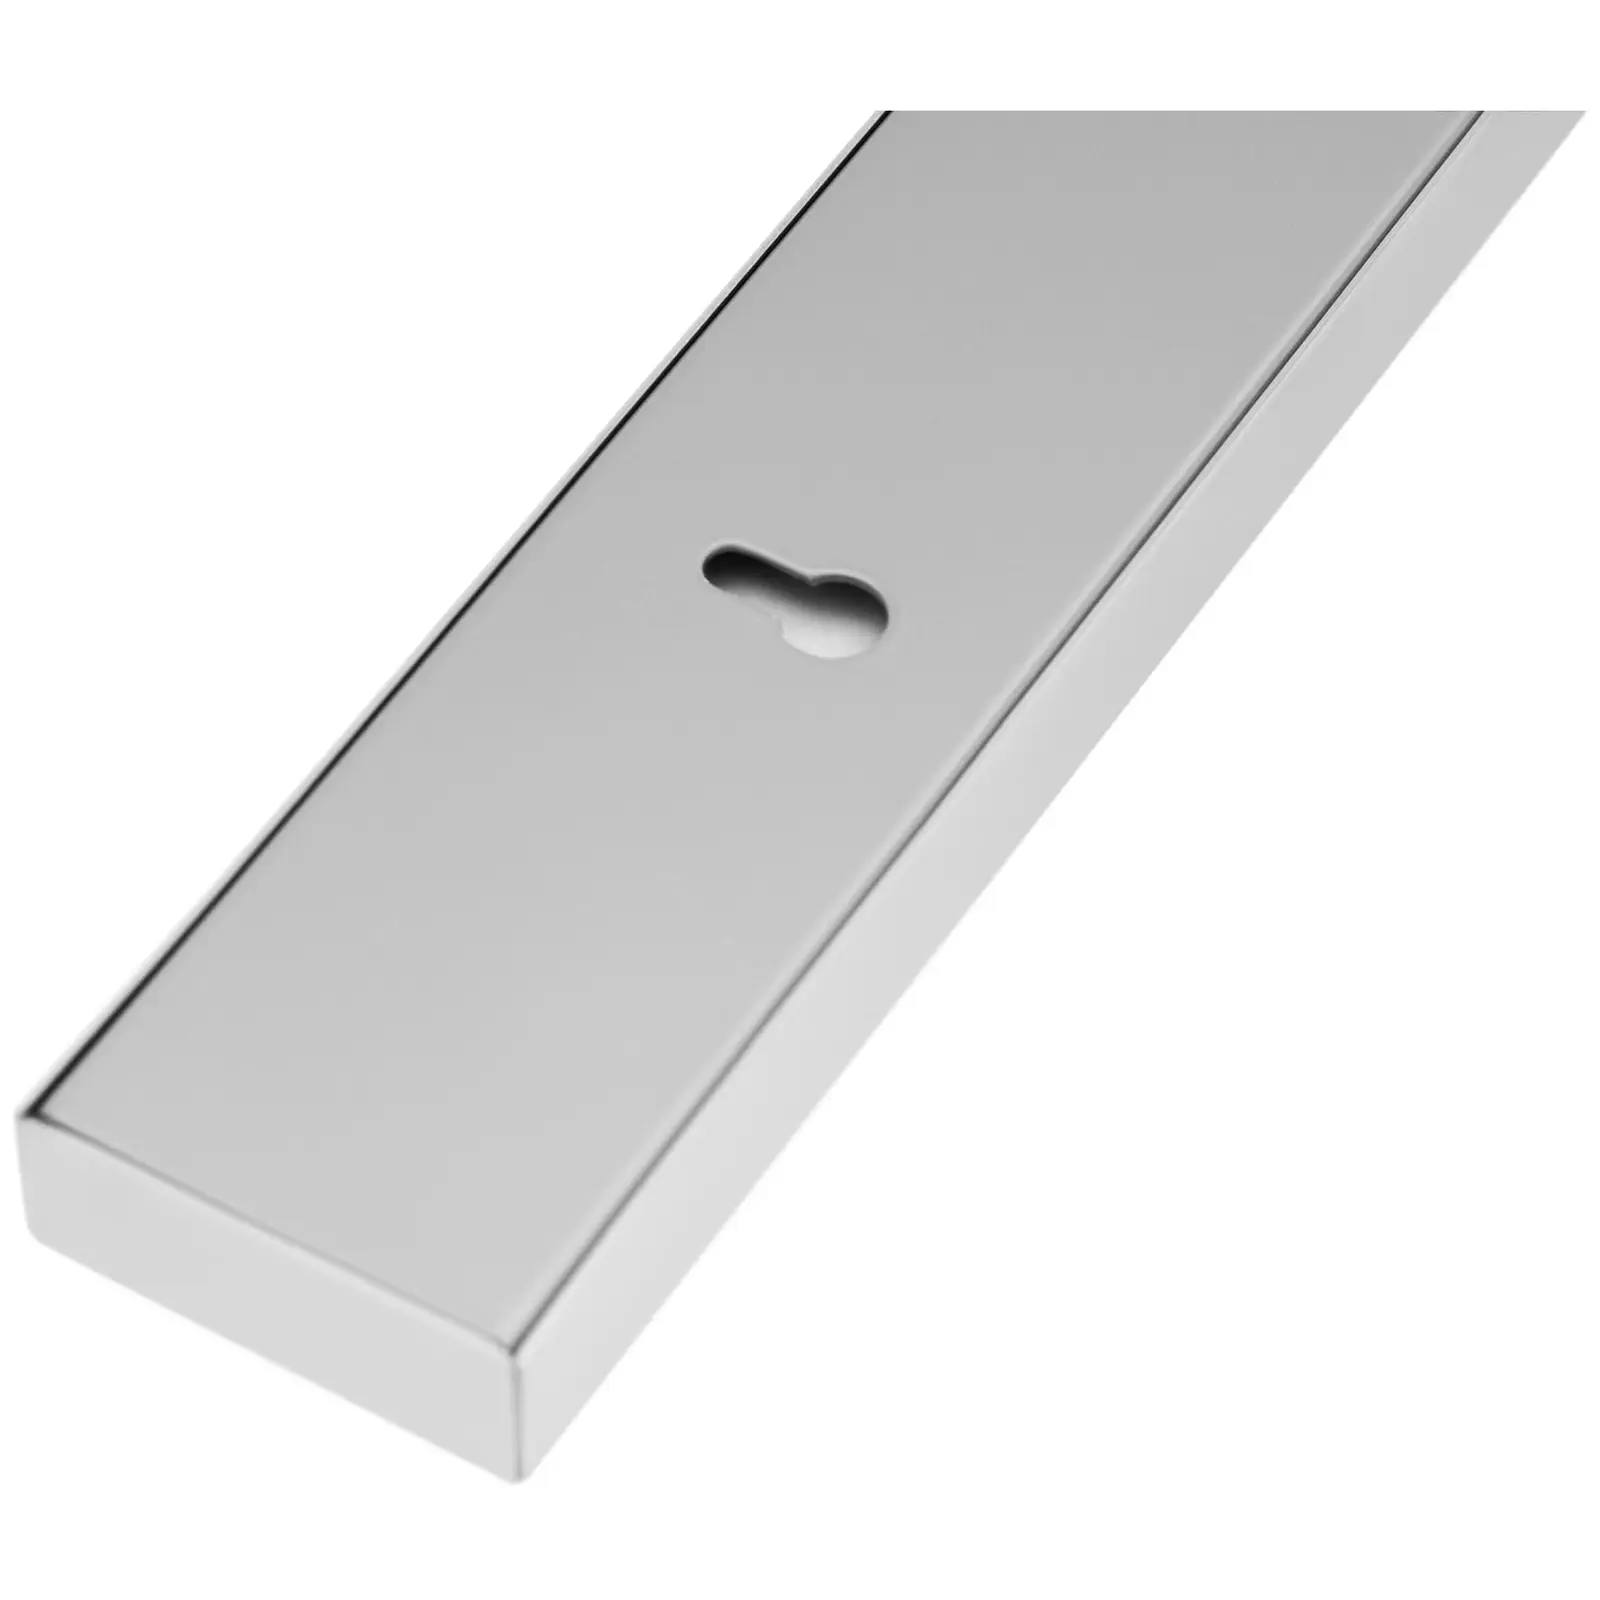 Magnetic Knife Holder - stainless steel / ferrite magnet - 44.5 x 4.5 x 2 cm